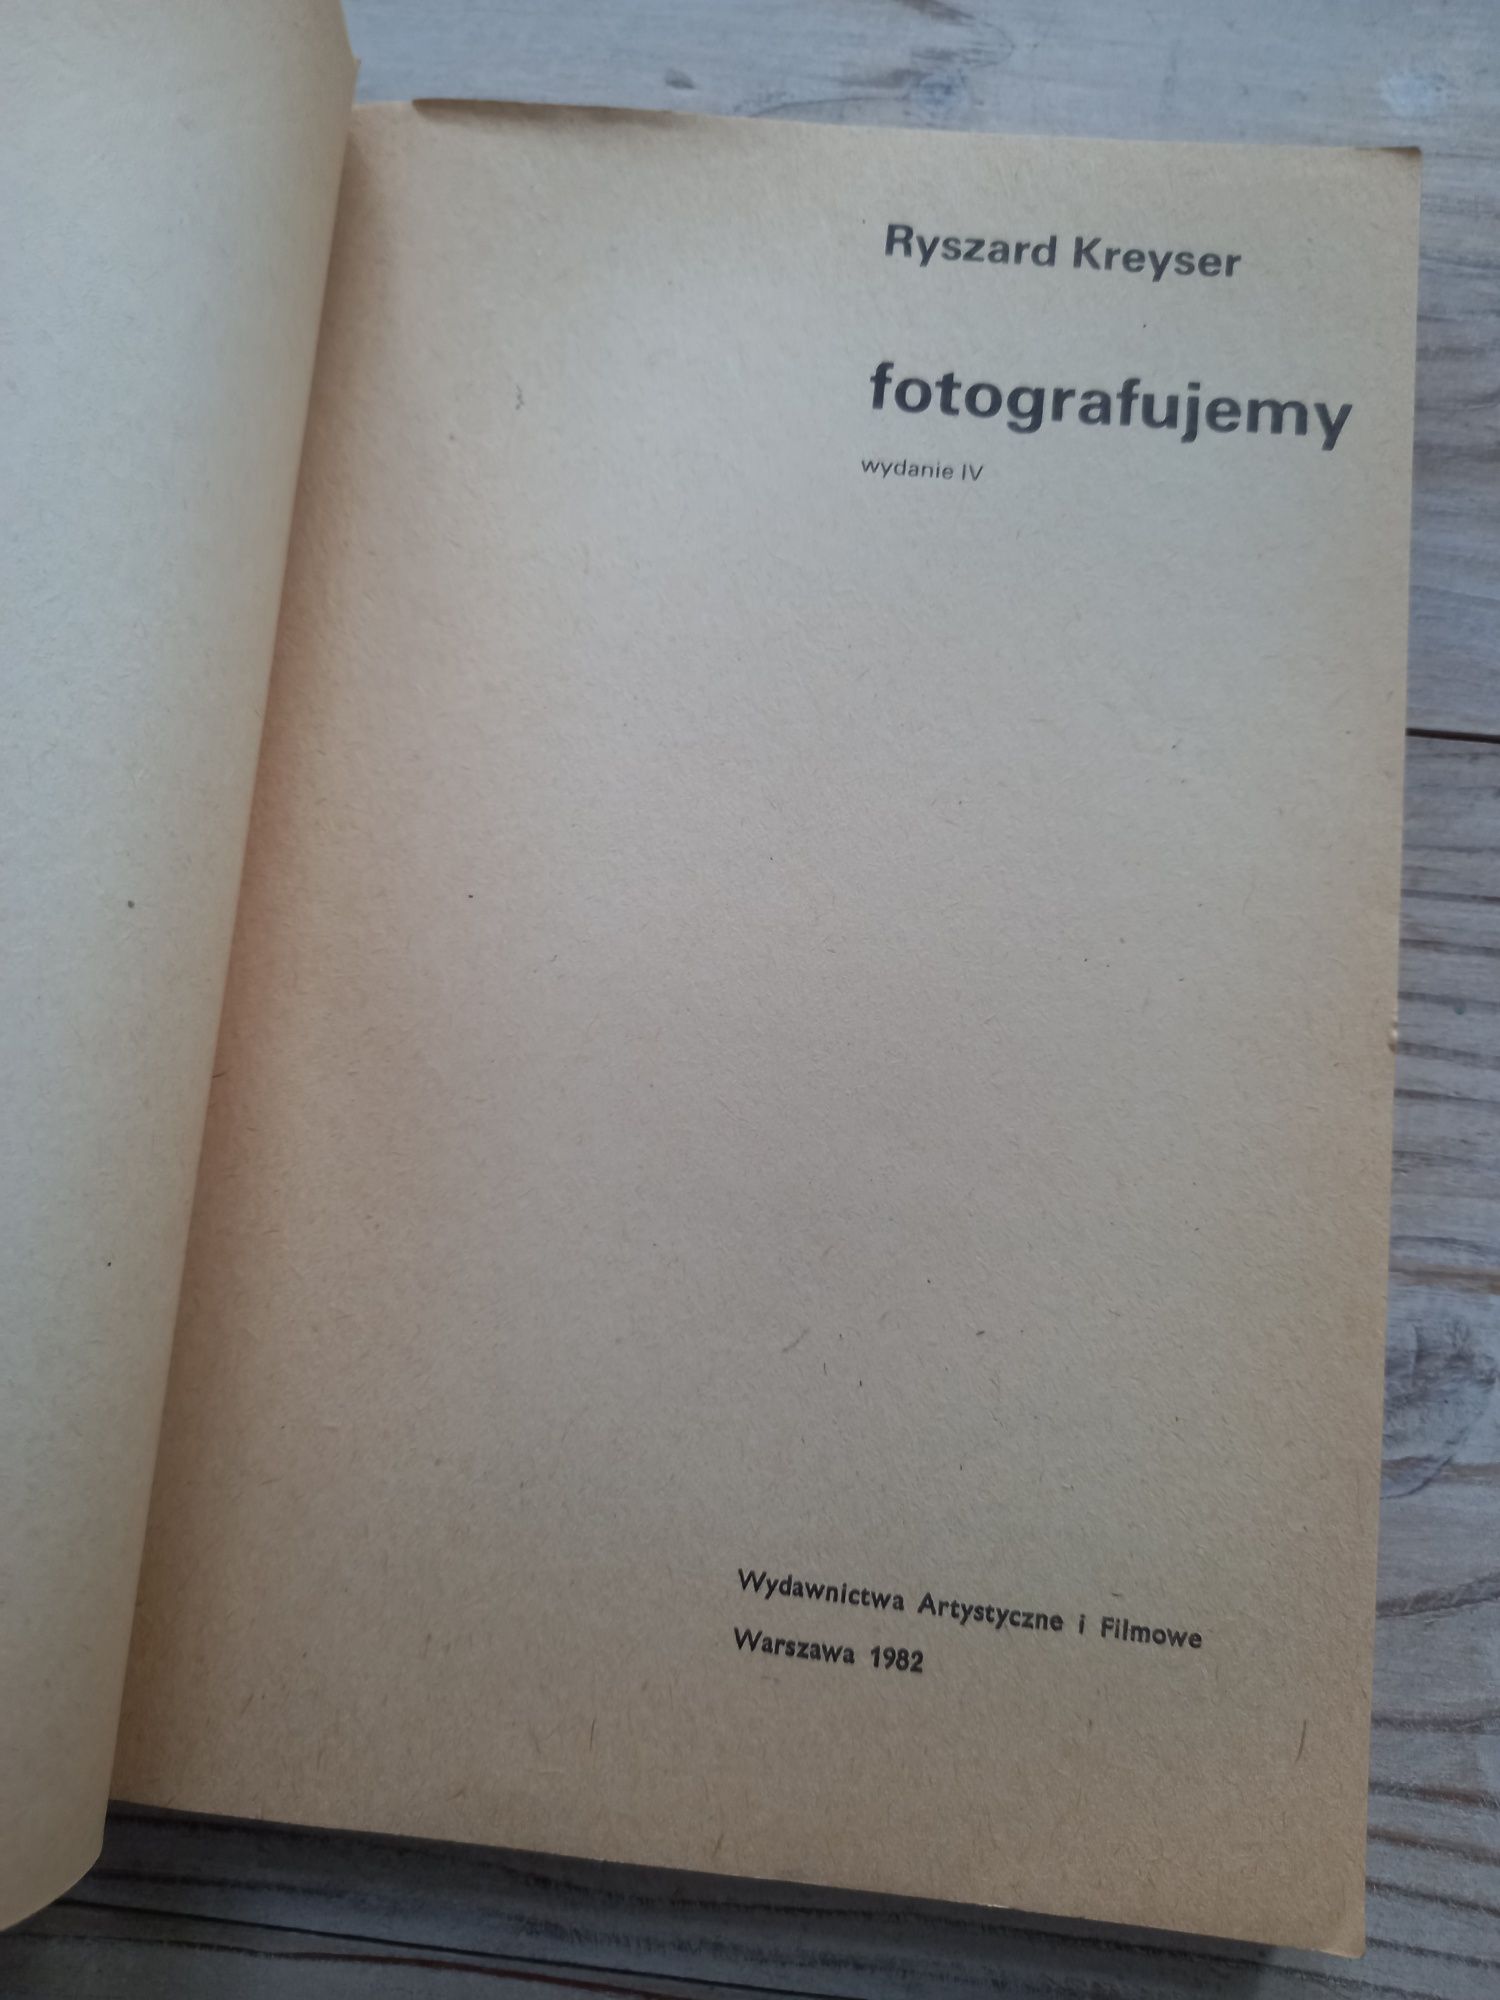 Książka o fotografii Fotografujemy Ryszard Kreyser 1963